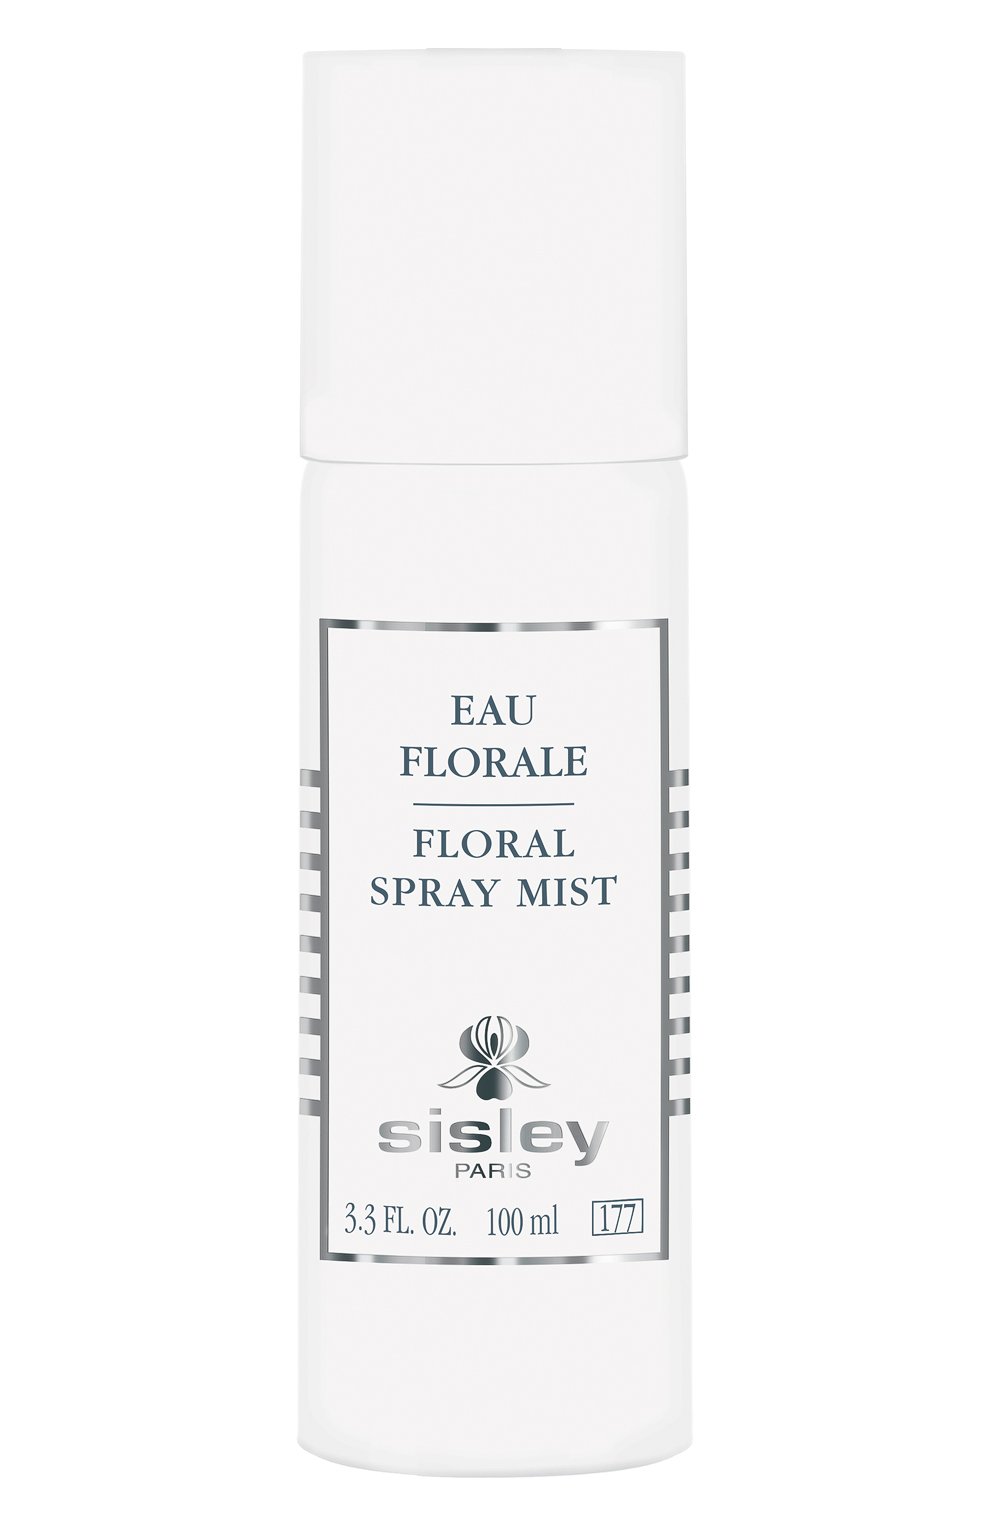 Flower spray. Floral Spray Mist от Сислей. Цветочная вода / Eau Florale Sisley. Сислей спрей для объема волос.